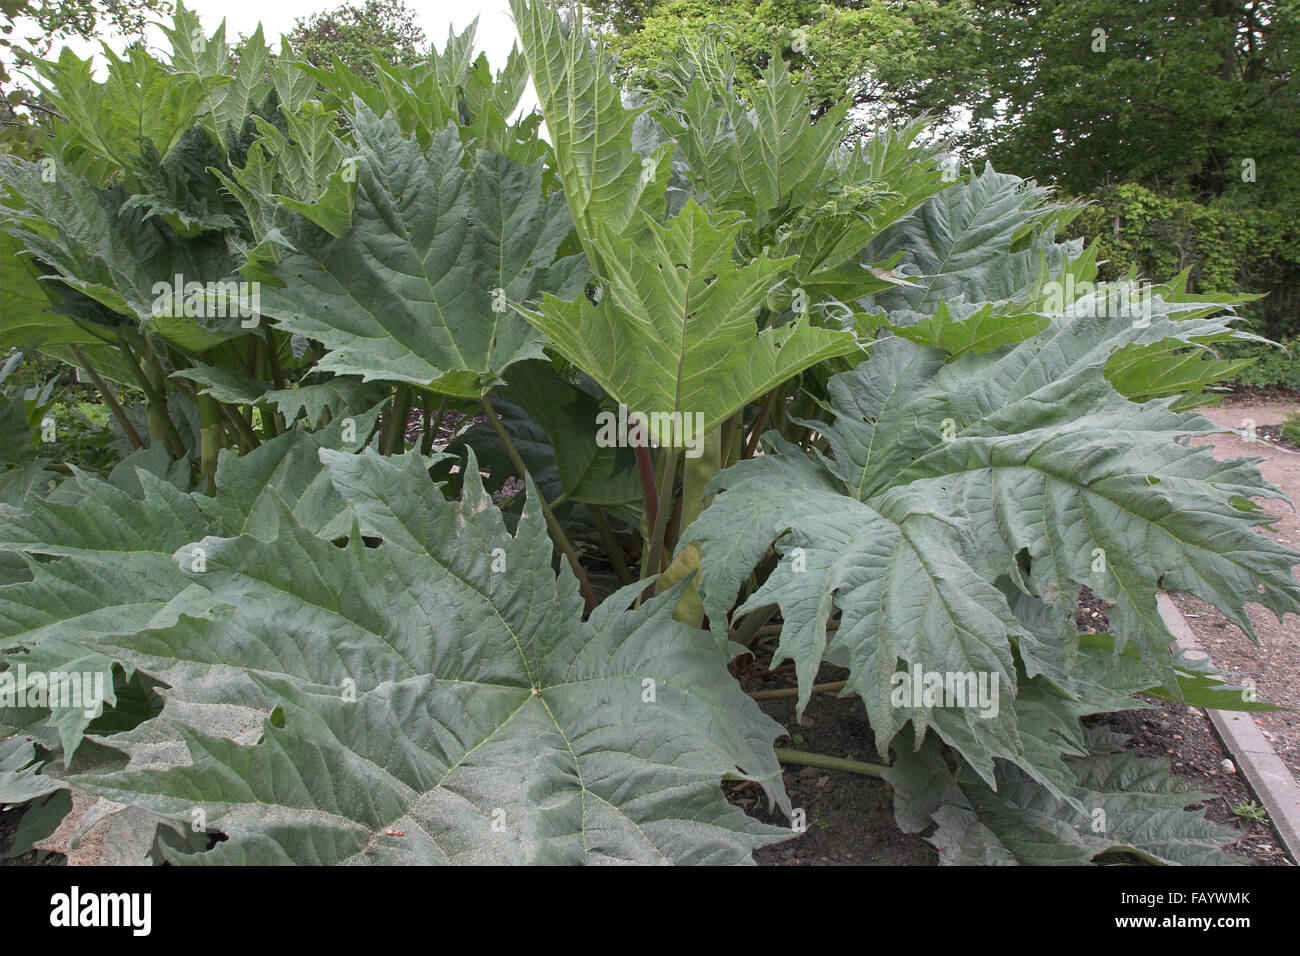 Chinese Rhubarb, Rhubarbe, Rhabarber, Arzneirhabarber, Chinesischer Rhabarber, Rheum palmatum Stock Photo